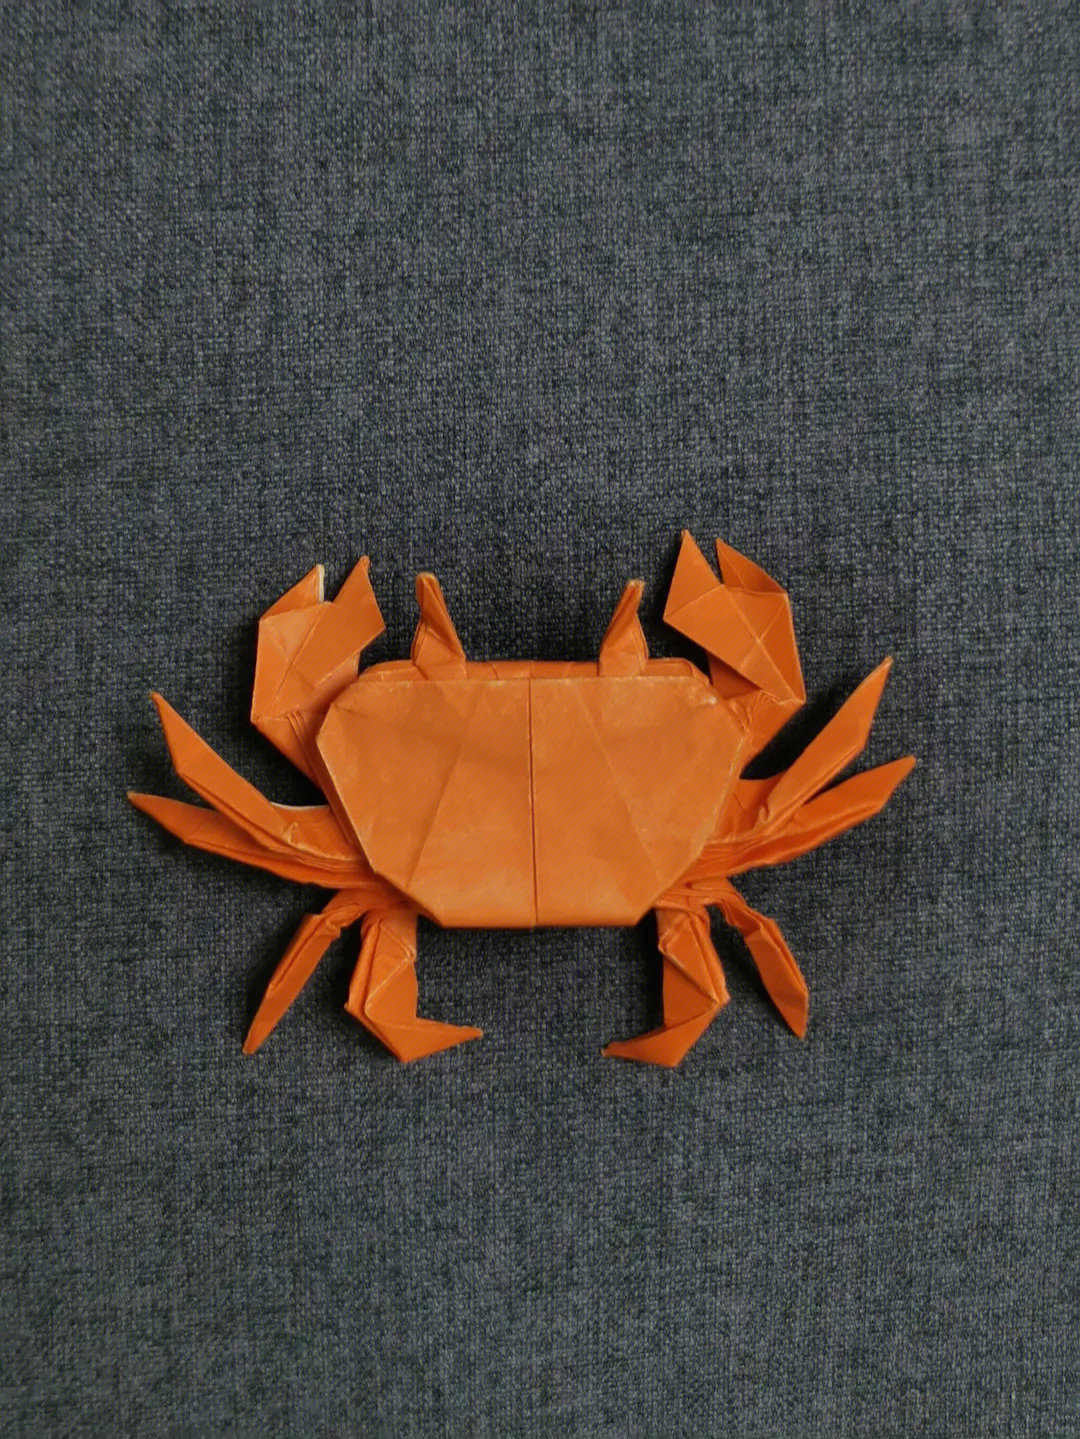 折纸小螃蟹的折法图片